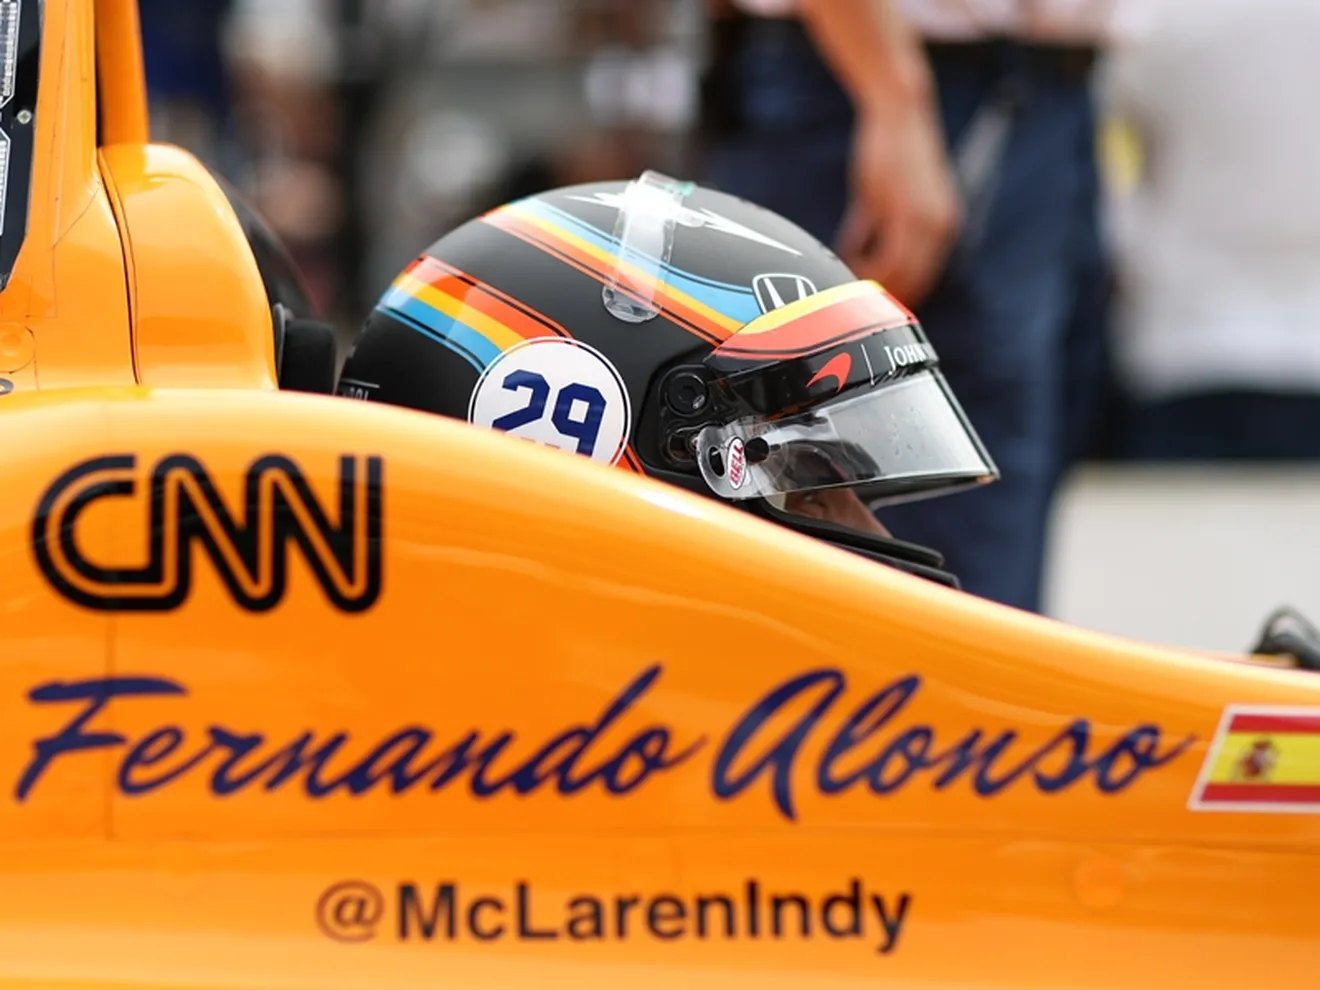 Alonso luchará por la pole: "Es una gran oportunidad y voy a intentar aprovecharla"